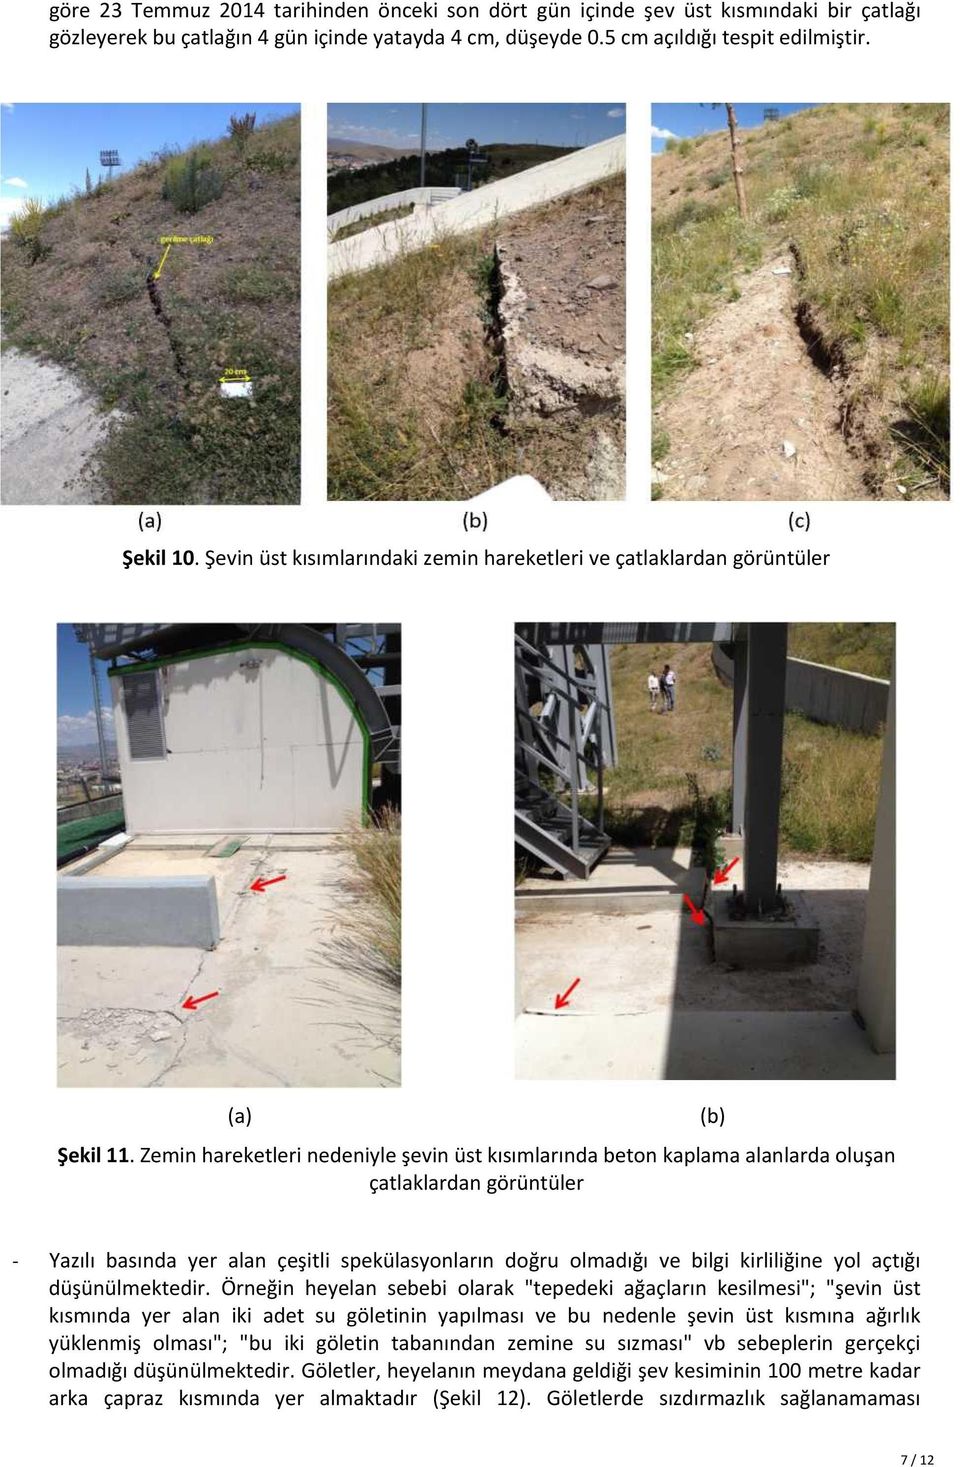 Zemin hareketleri nedeniyle şevin üst kısımlarında beton kaplama alanlarda oluşan çatlaklardan görüntüler (b) - Yazılı basında yer alan çeşitli spekülasyonların doğru olmadığı ve bilgi kirliliğine